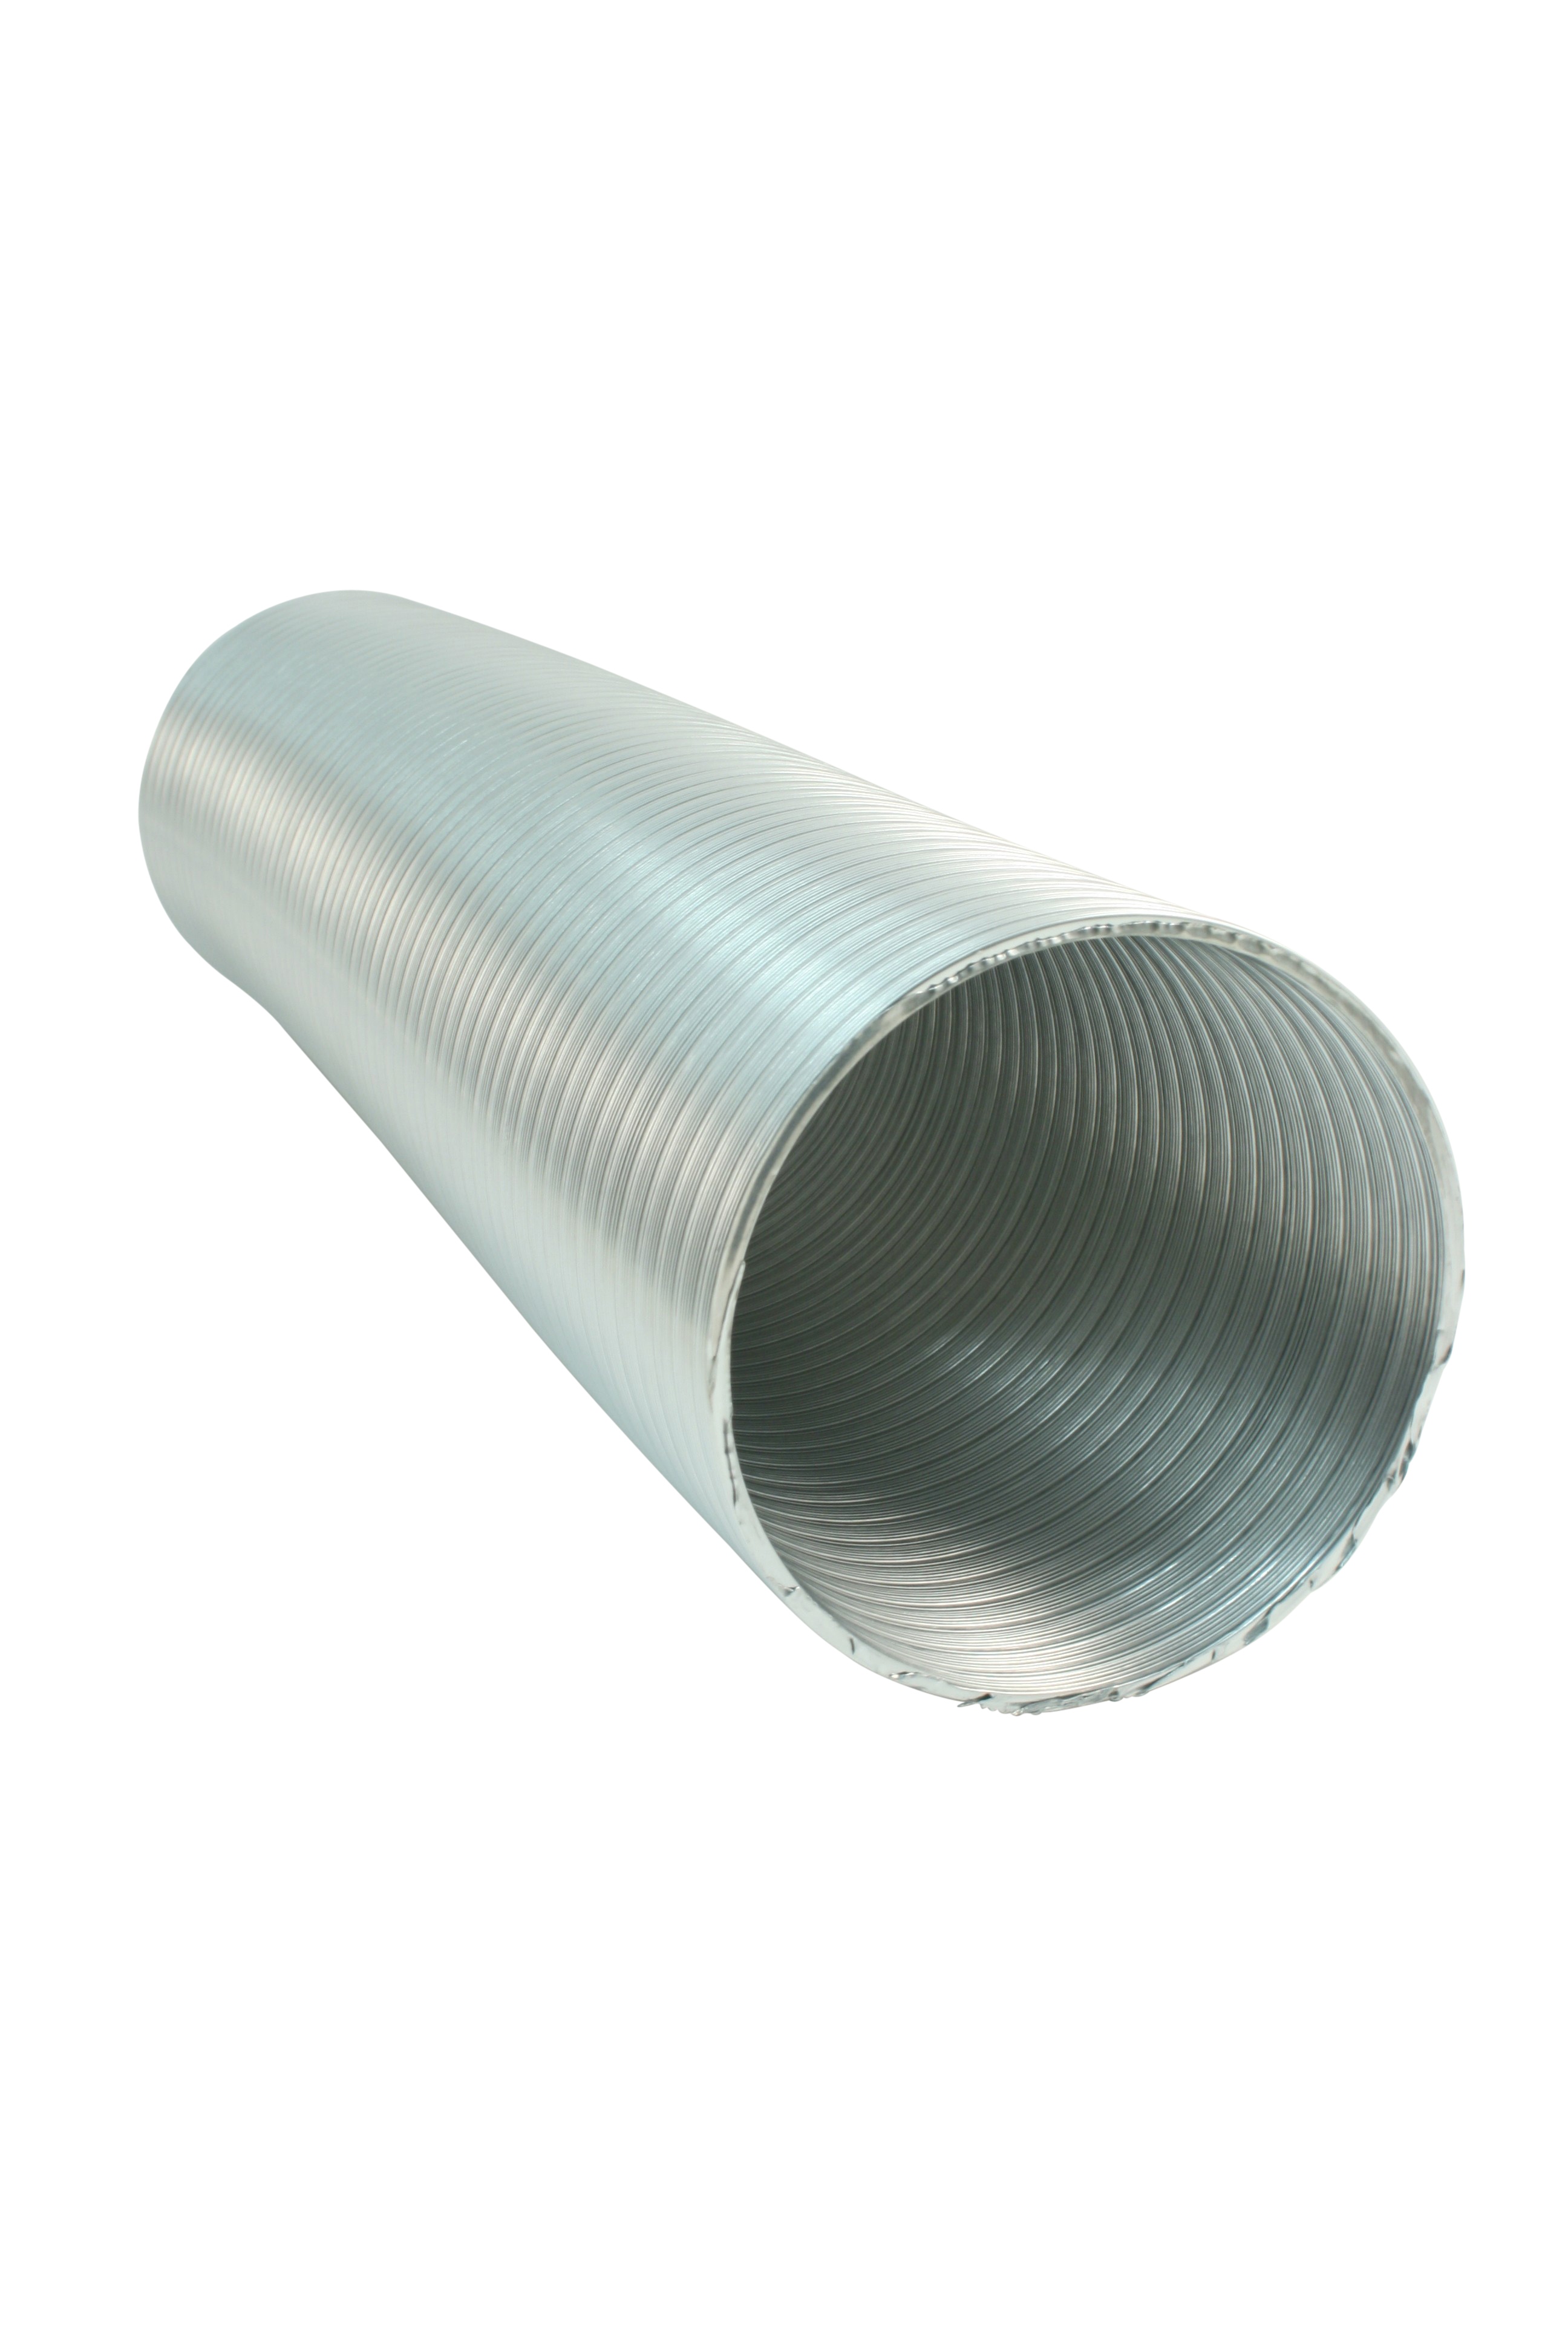 Marley Flexibles Lüftungsrohr aus Aluminium, Ø 125 mm, 500-2500 mm, Silber